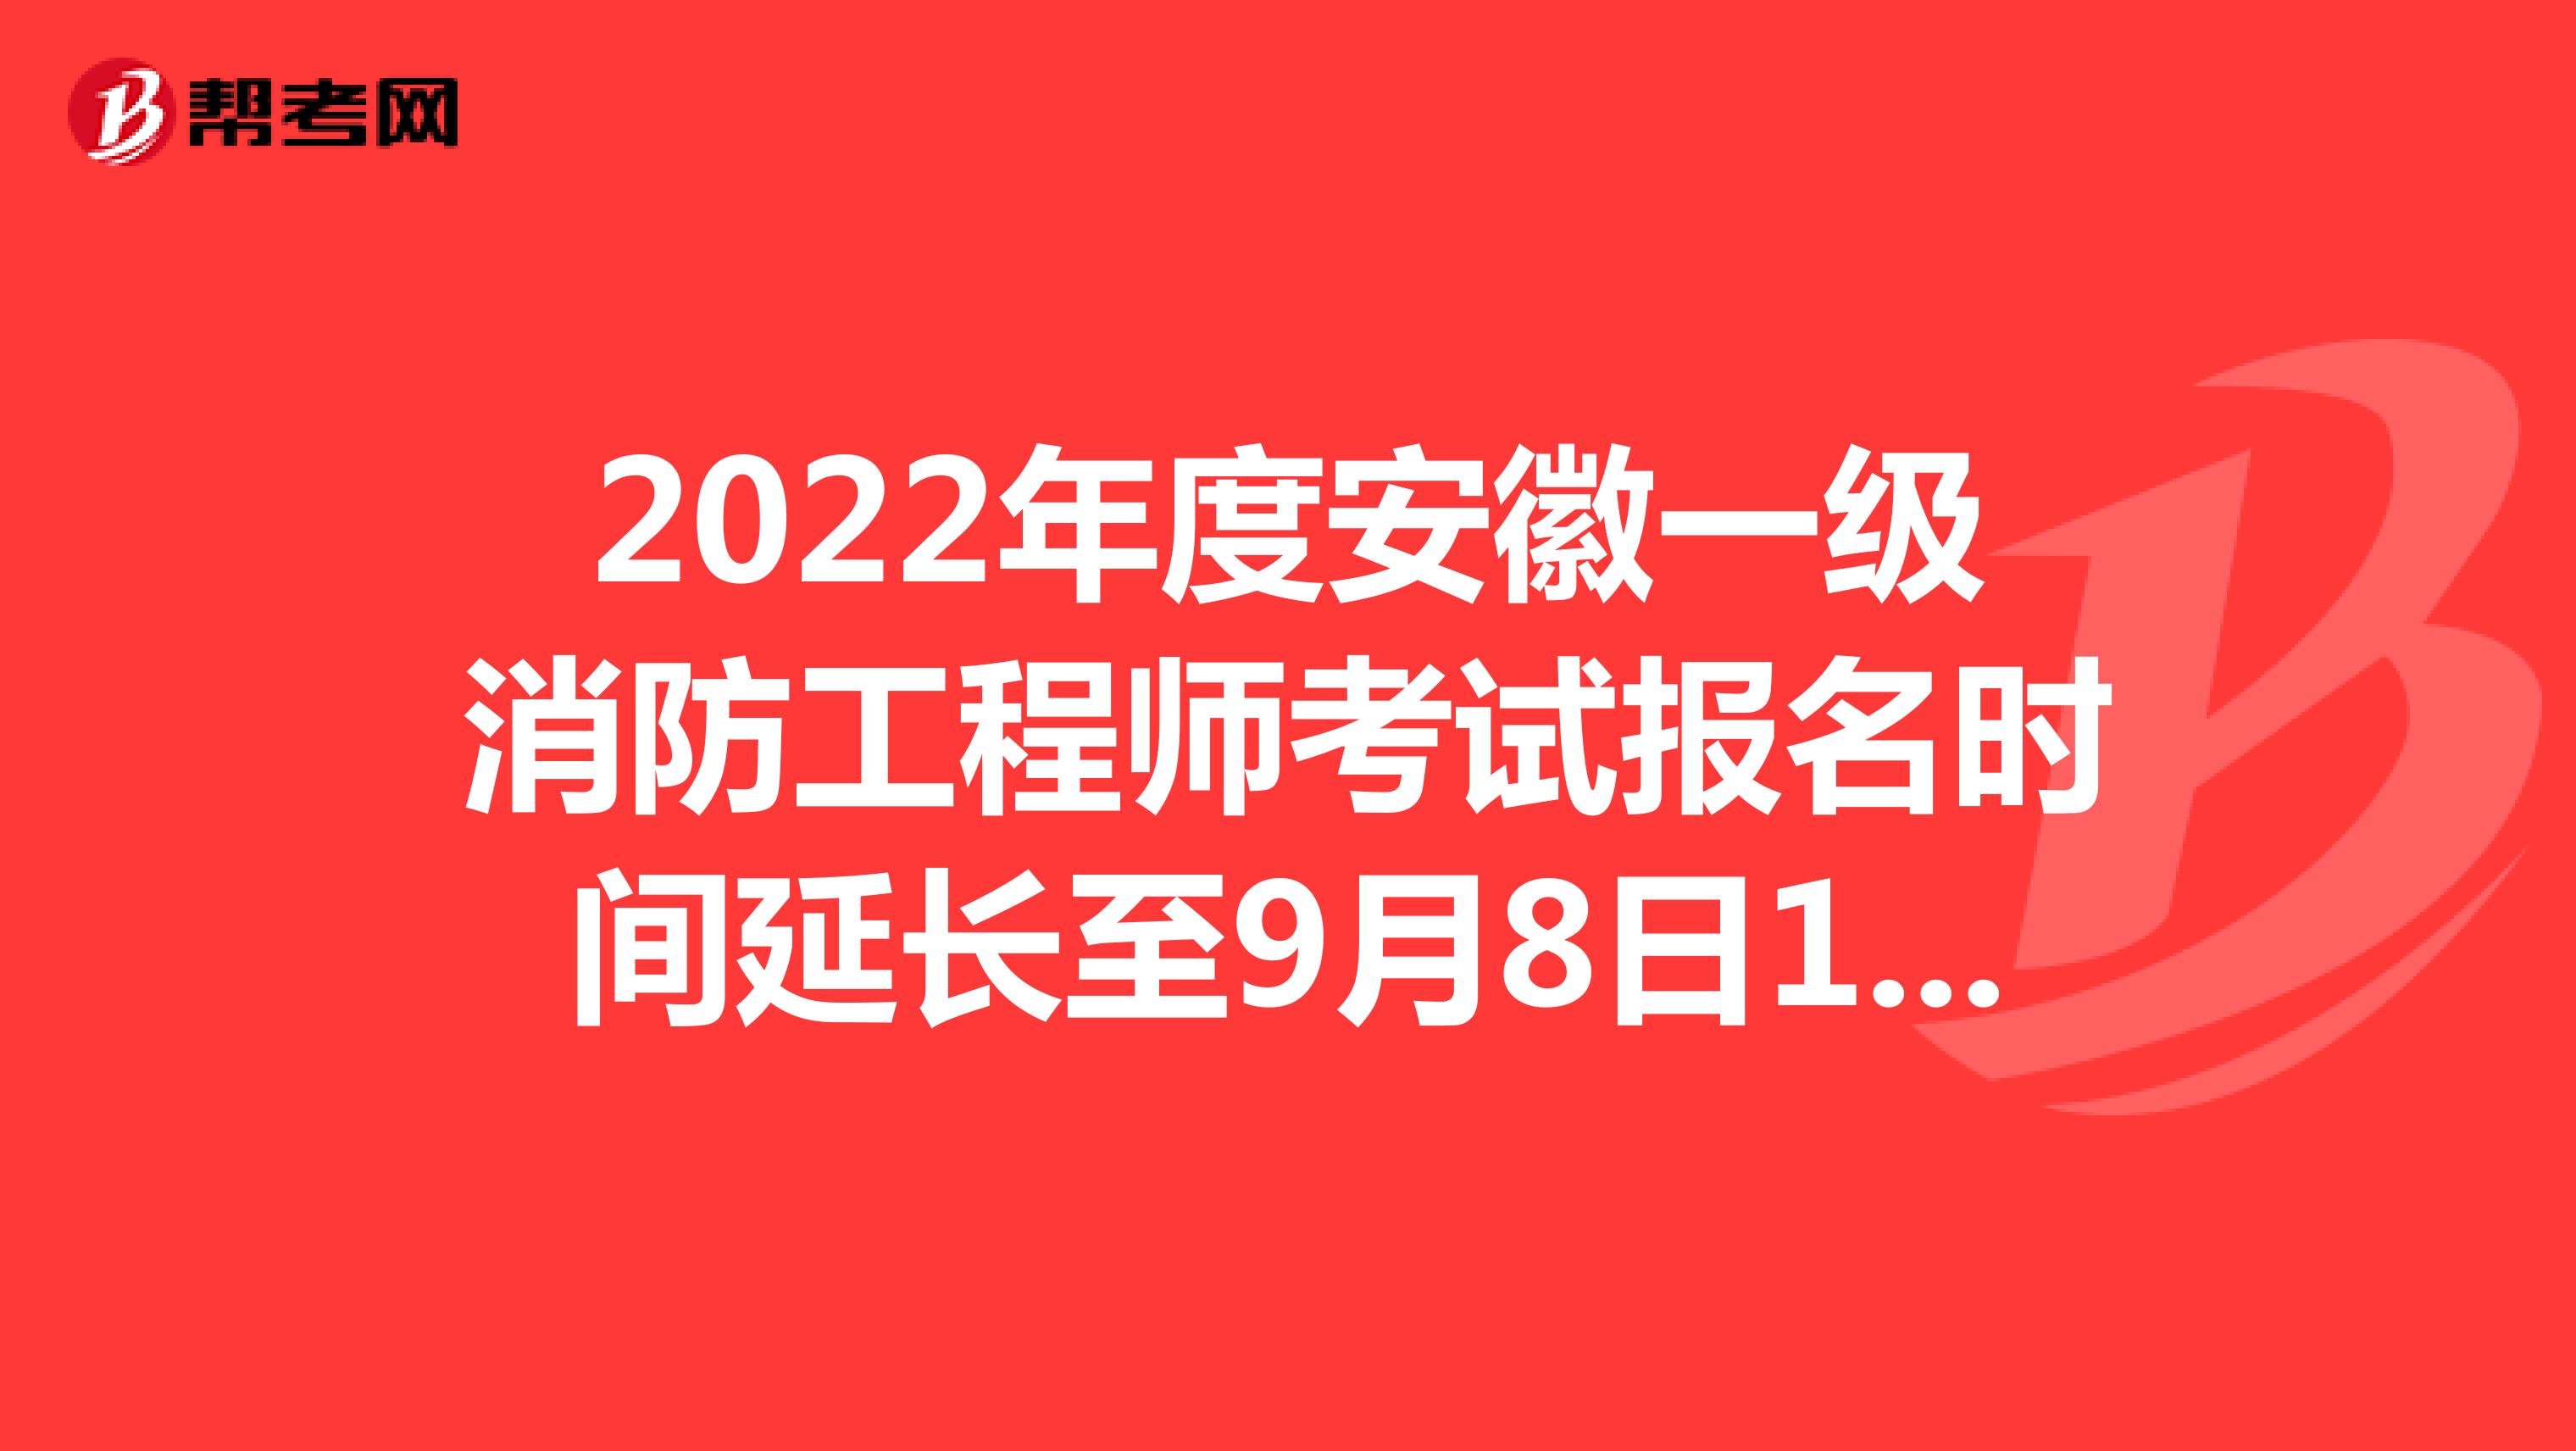 2022年度安徽一级消防工程师考试报名时间延长至9月8日16:00